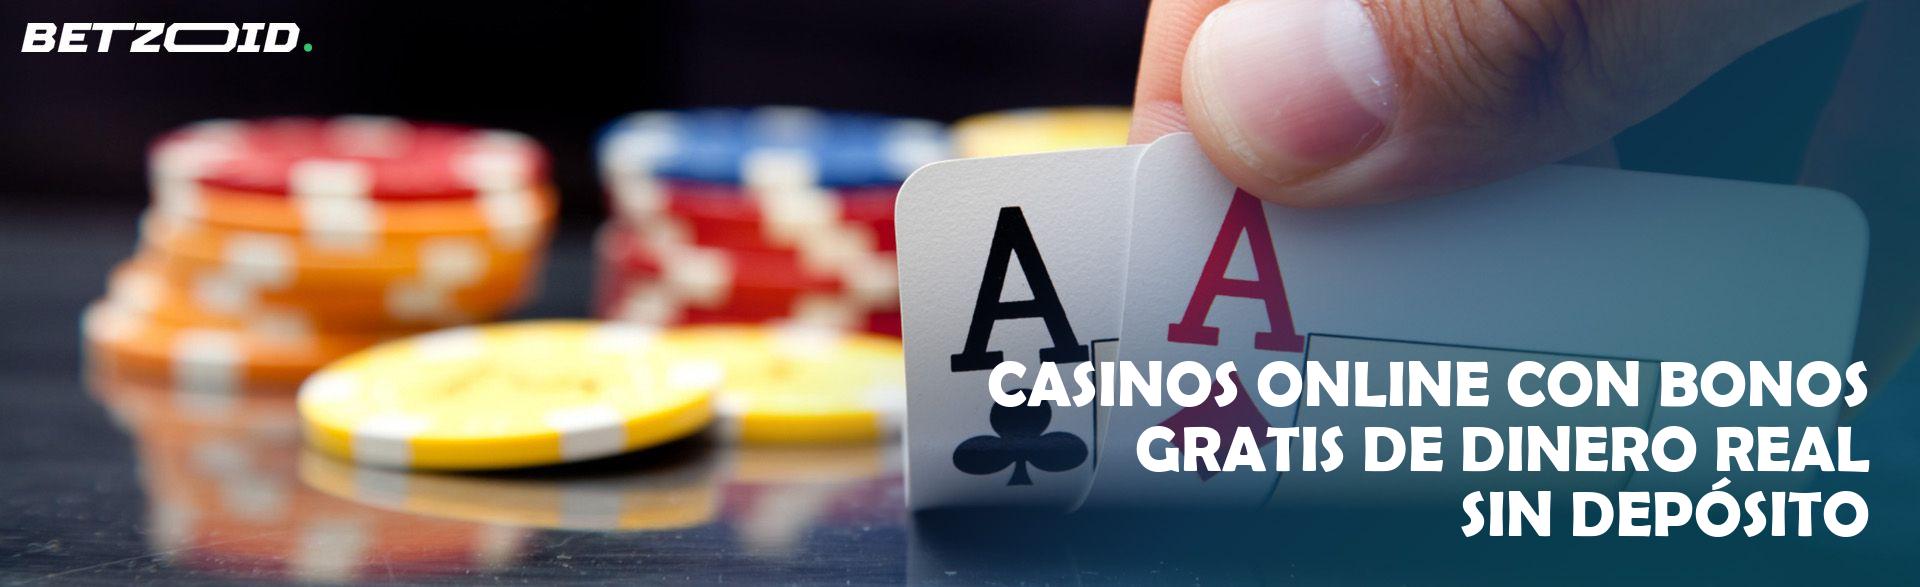 Bonos en efectivo en casinos virtuales